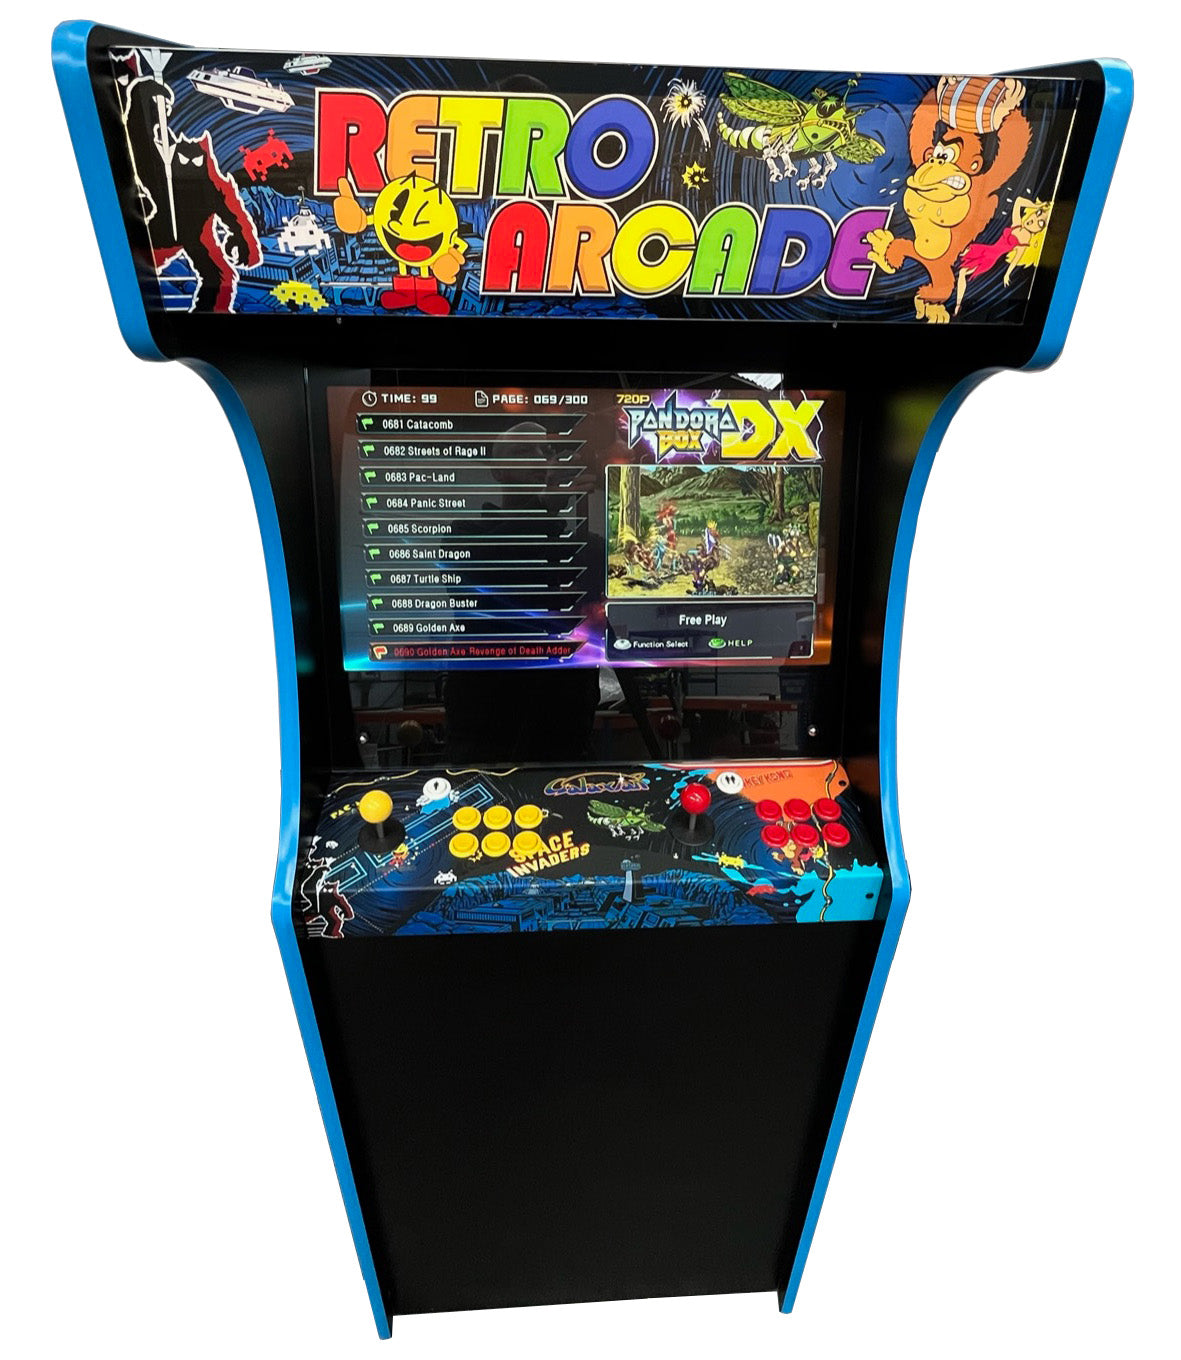 Retro Upright Arcade Machine (Pandora Arcade Box DX)